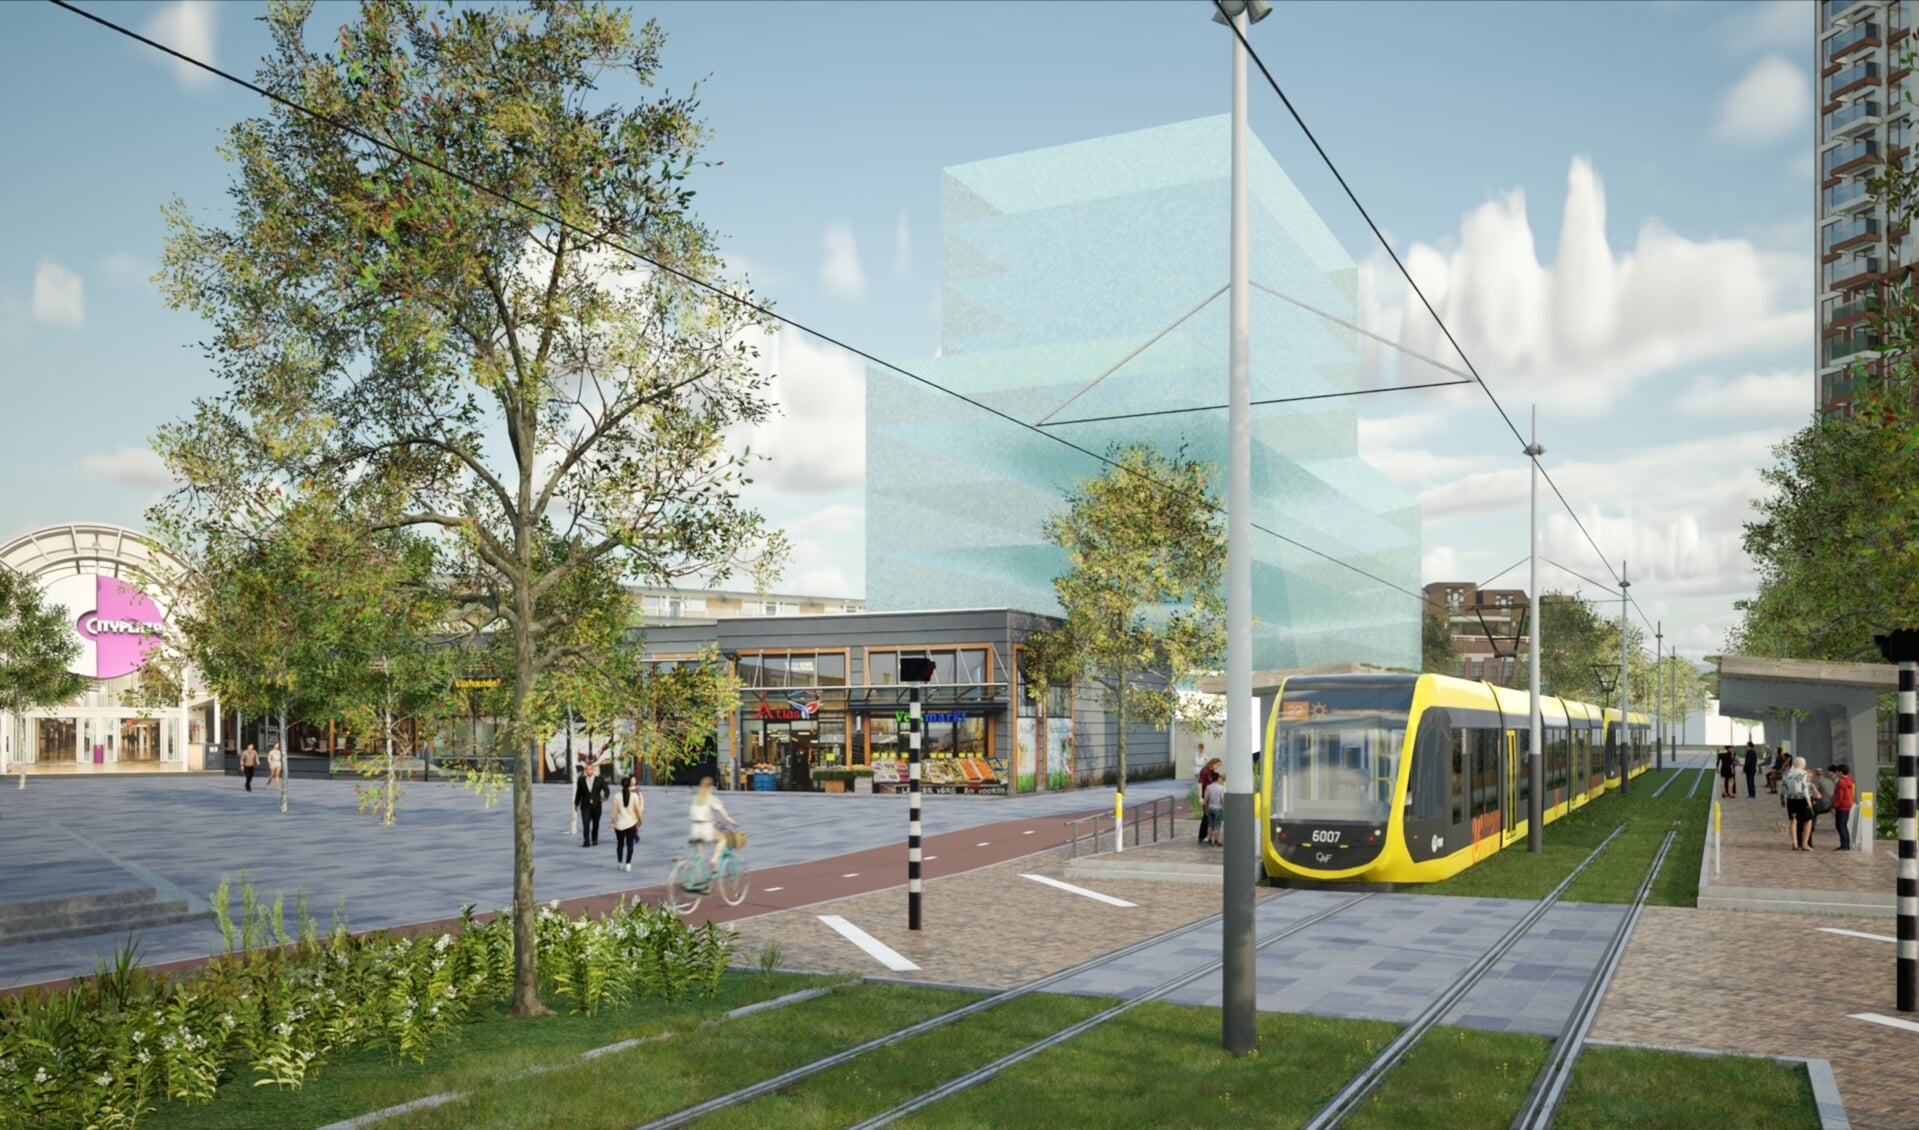 Impressie van de nieuwe tramhalte en trambaan in Nieuwegein.